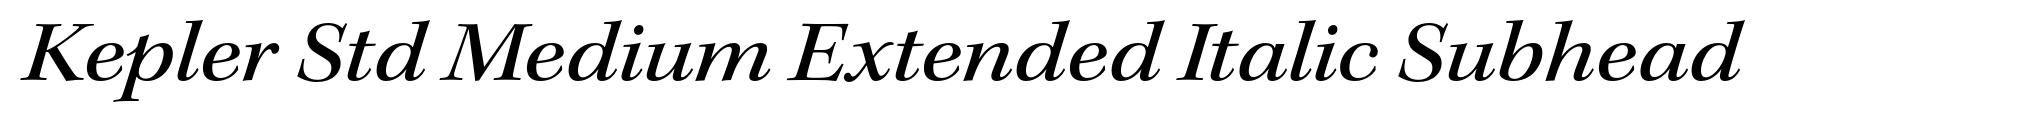 Kepler Std Medium Extended Italic Subhead image